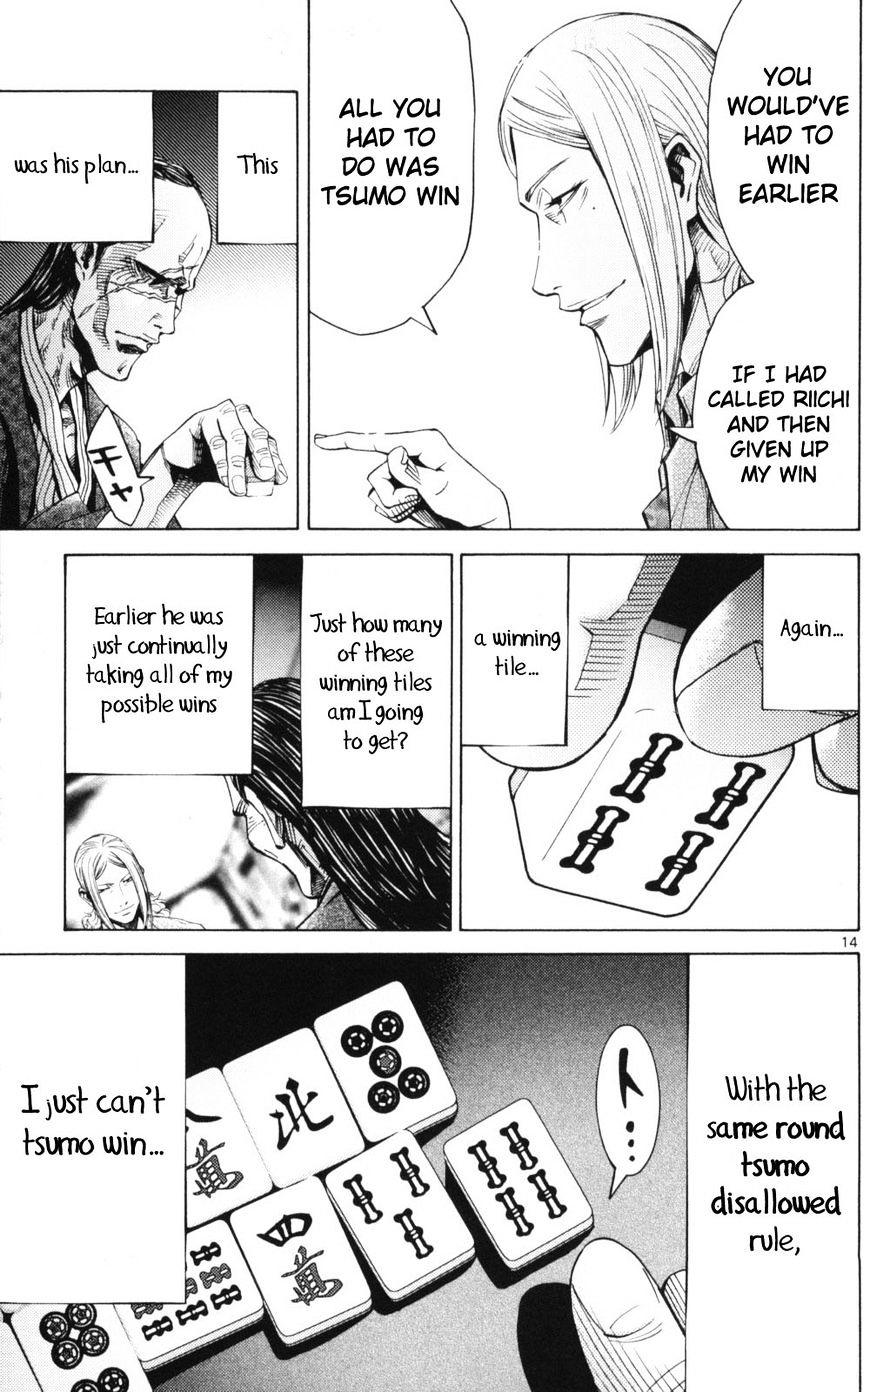 Imawa No Kuni No Alice Chapter 51.1 : Side Story 6 - King Of Diamonds (1) page 14 - Mangakakalot